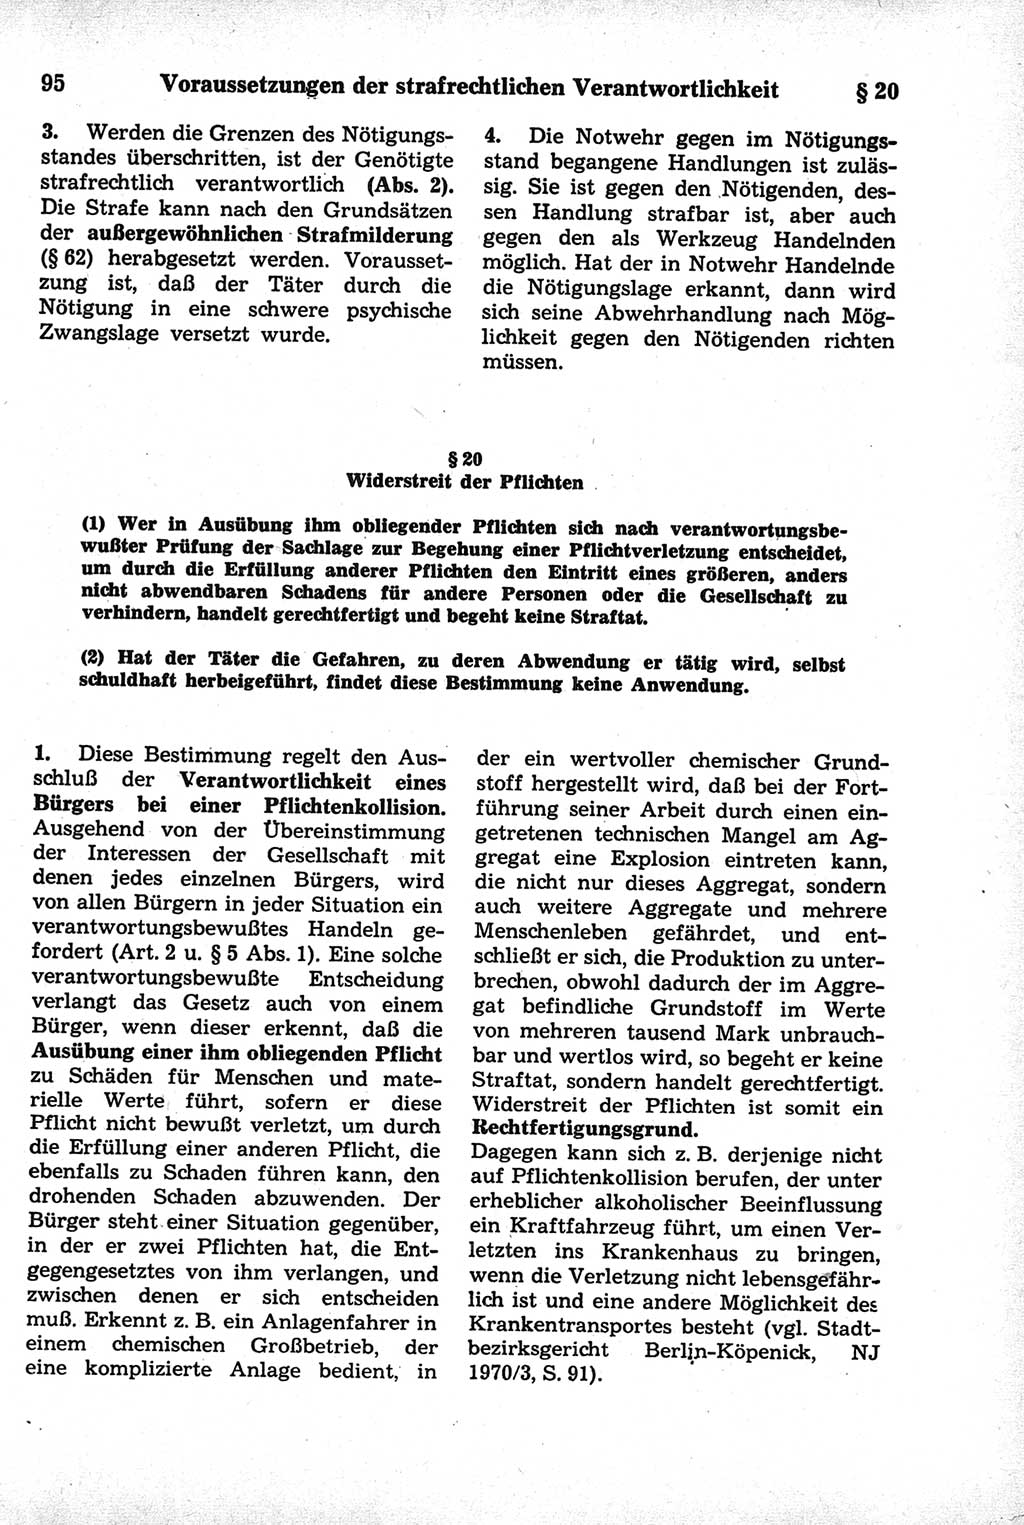 Strafrecht der Deutschen Demokratischen Republik (DDR), Kommentar zum Strafgesetzbuch (StGB) 1981, Seite 95 (Strafr. DDR Komm. StGB 1981, S. 95)